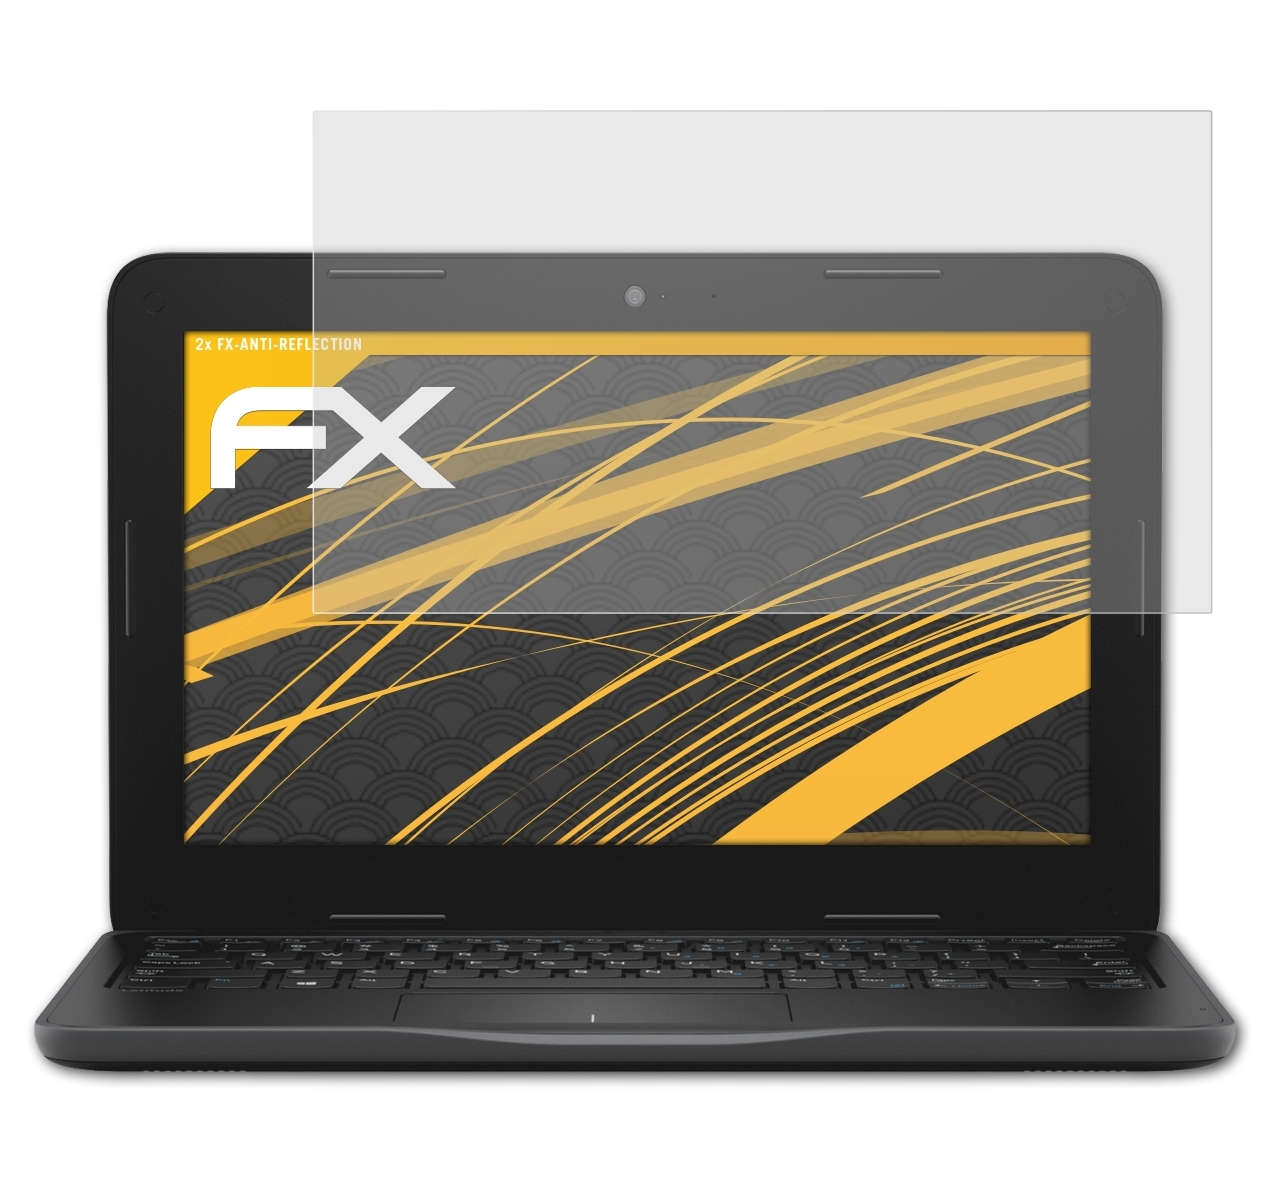 ATFOLIX 2x FX-Antireflex Displayschutz(für Dell Latitude 3190)